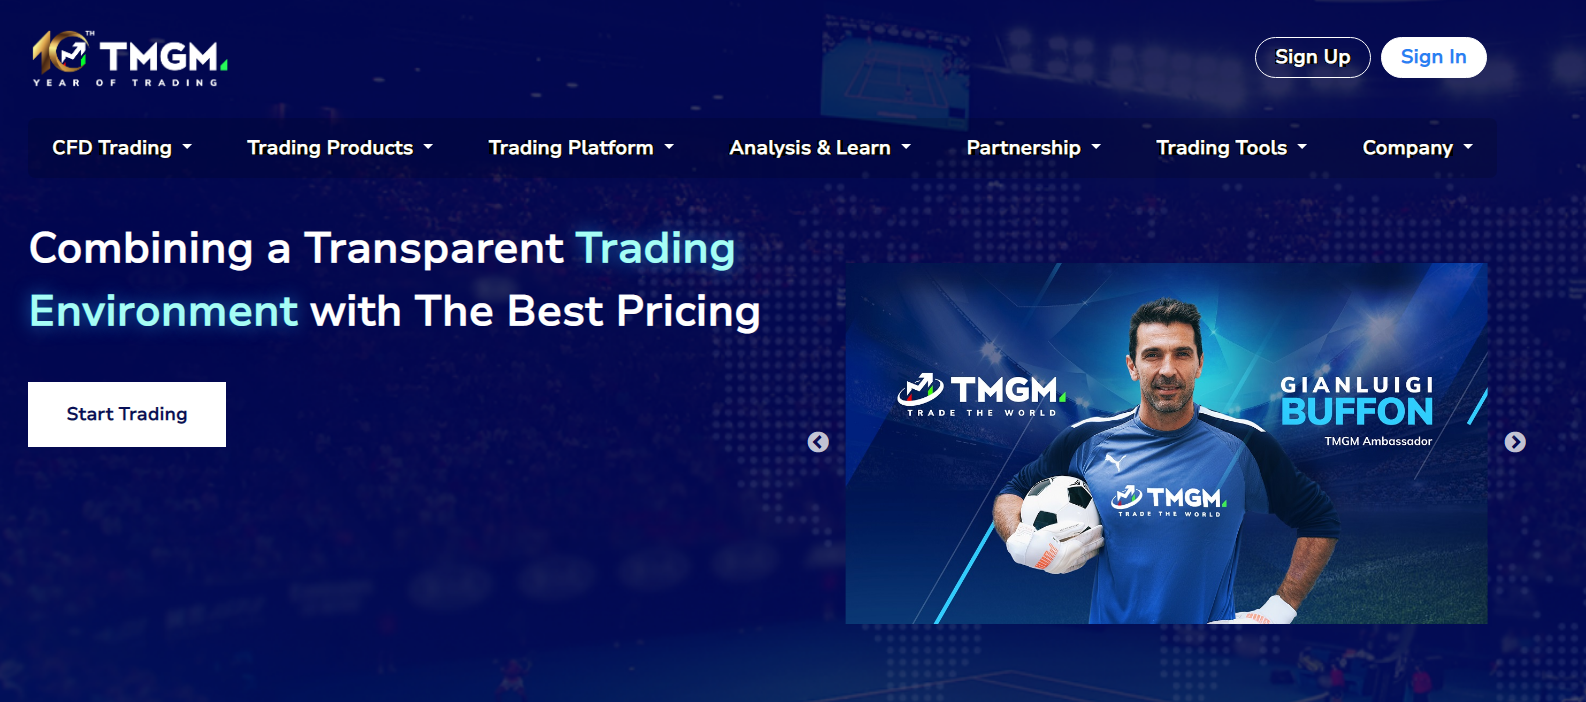 Tmgm.net homepage